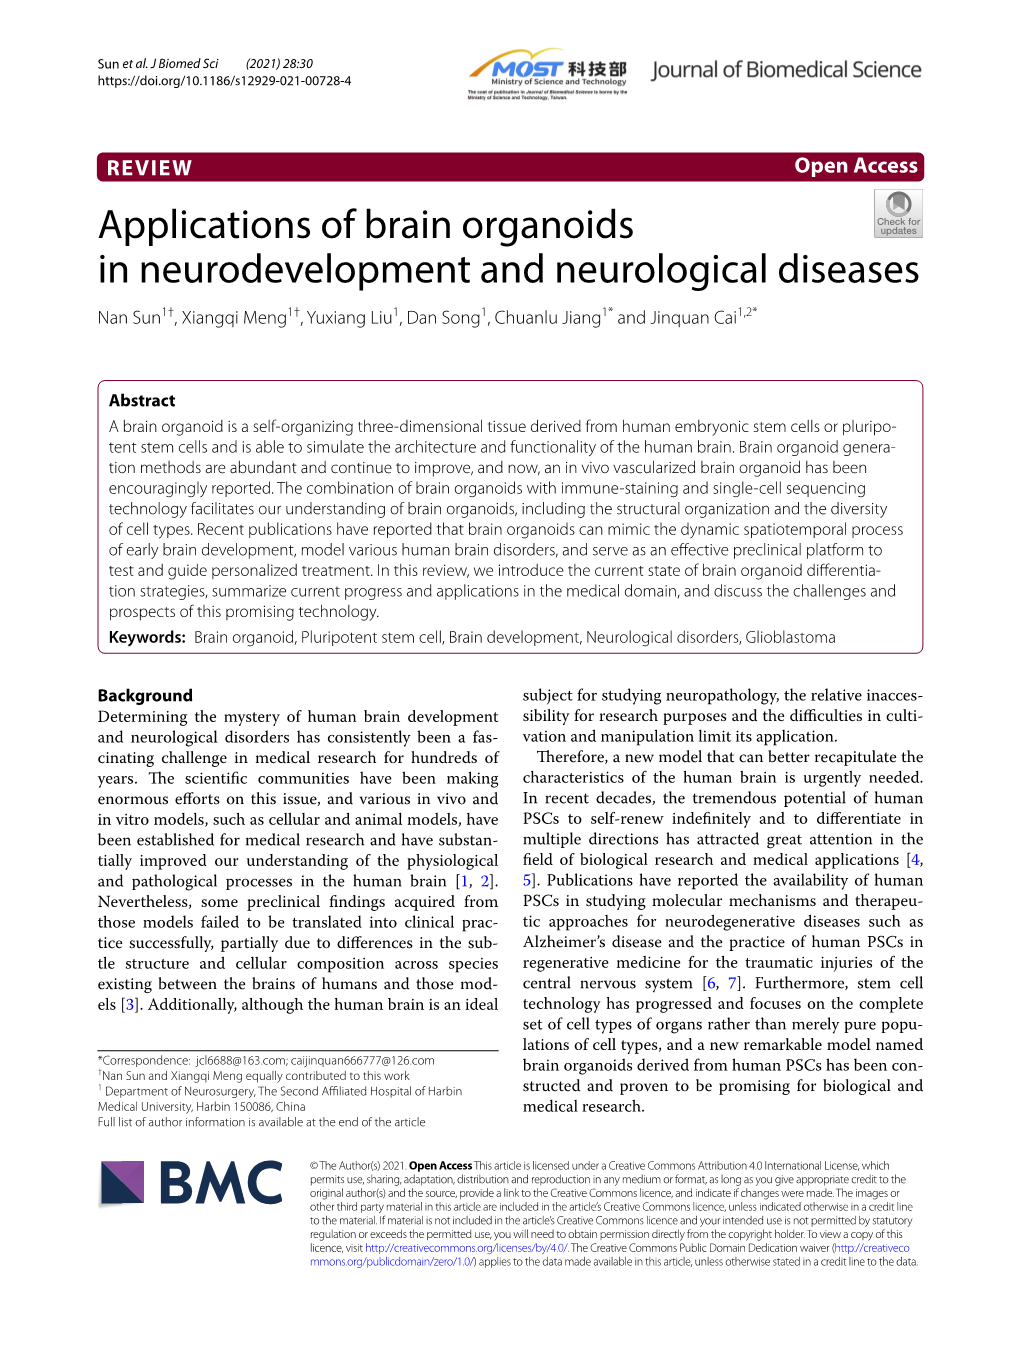 Applications of Brain Organoids in Neurodevelopment and Neurological Diseases Nan Sun1†, Xiangqi Meng1†, Yuxiang Liu1, Dan Song1, Chuanlu Jiang1* and Jinquan Cai1,2*